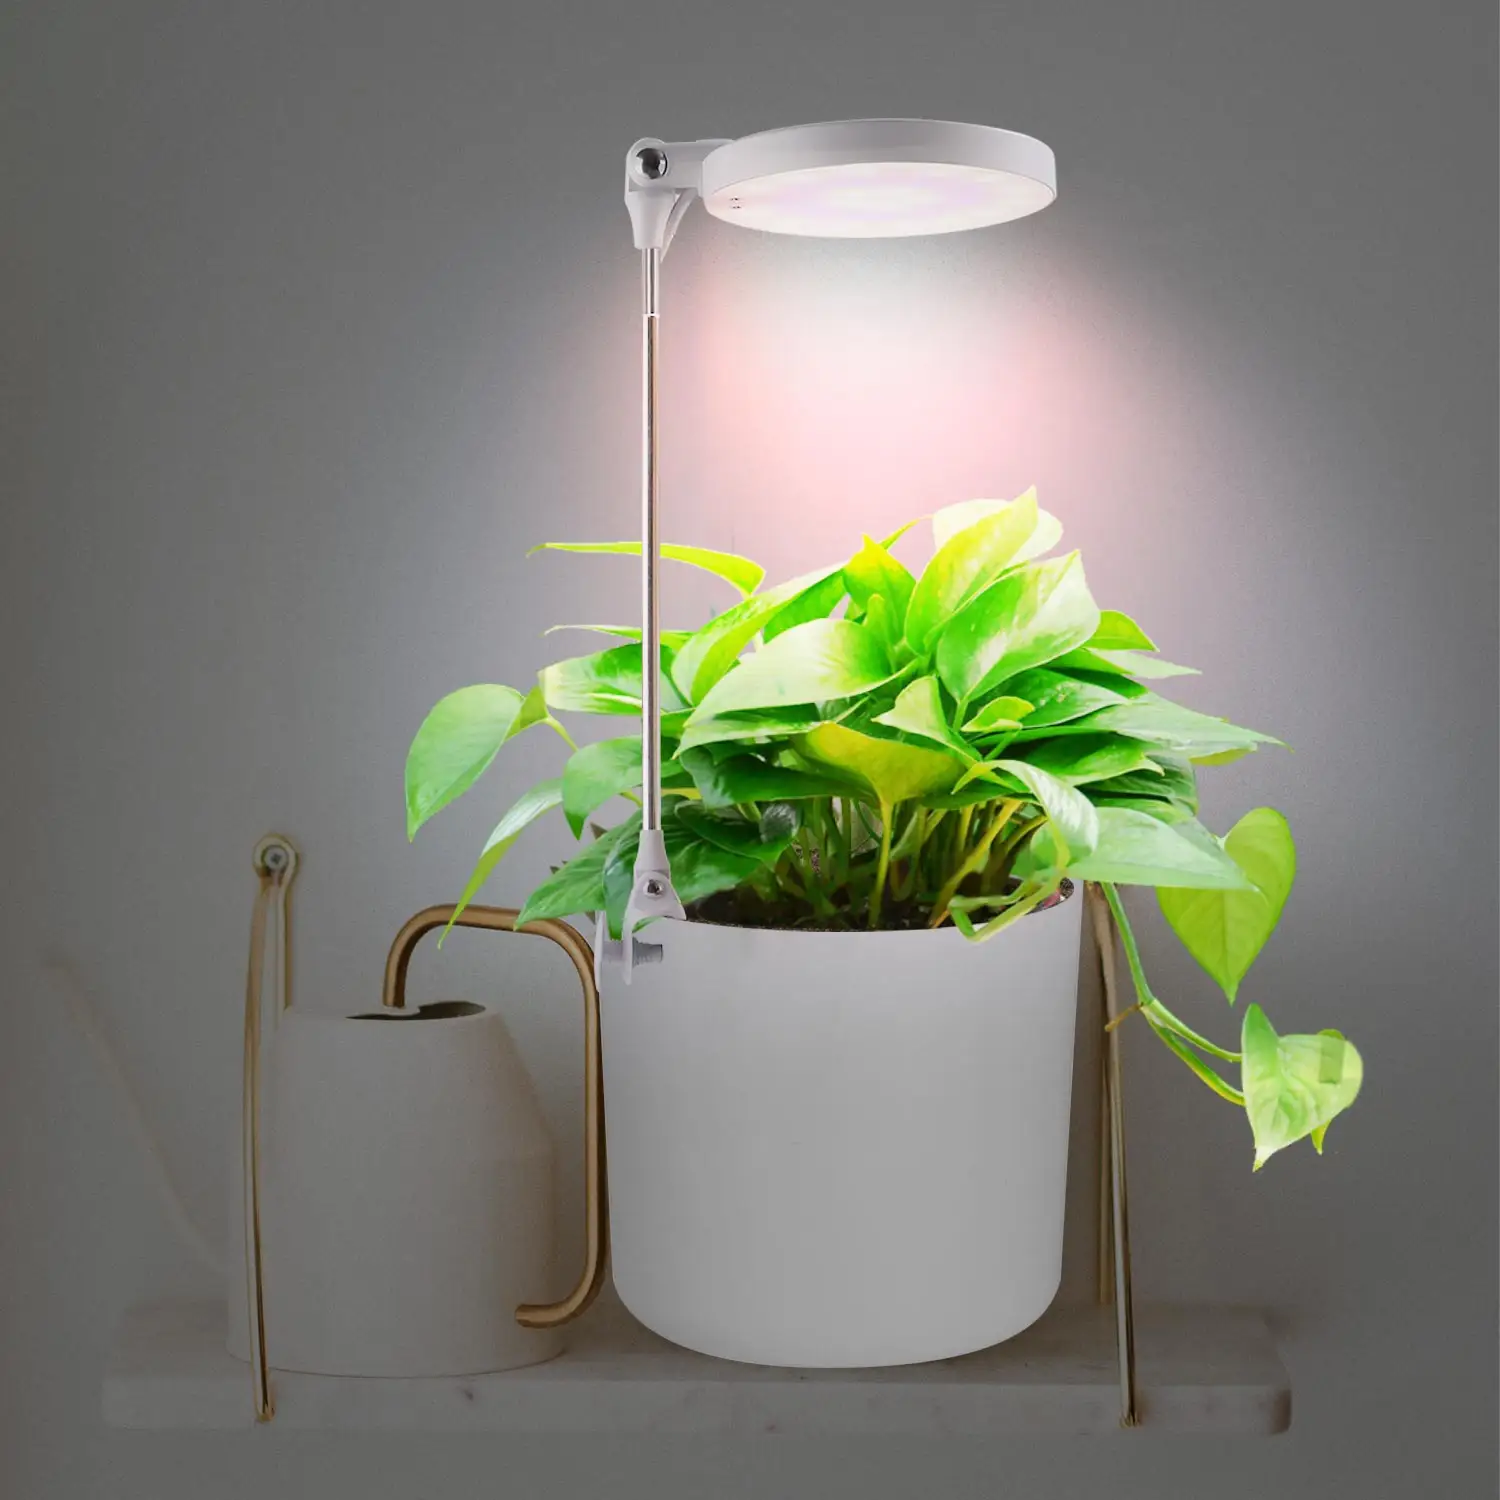 Smart LED Topfpflanze wachsen Licht intelligente Steuerung dimmbare höhen verstellbare Innen wachsen Lampe Pflanze wachsen Lampe Garten Kit